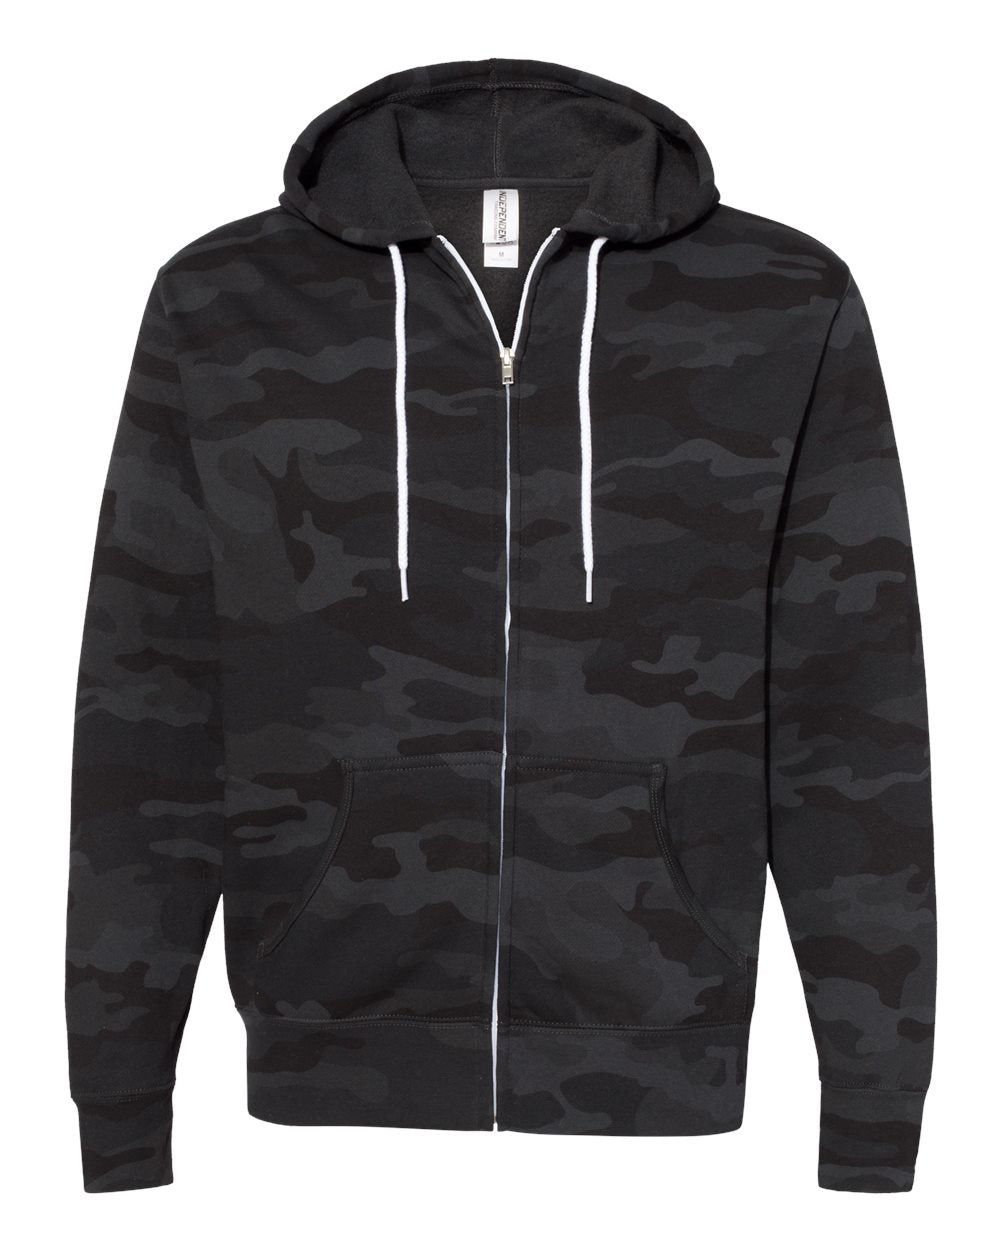 Lightweight Full-Zip Hooded Men's Sweatshirt - Independent Trading Co. AFX90UNZ